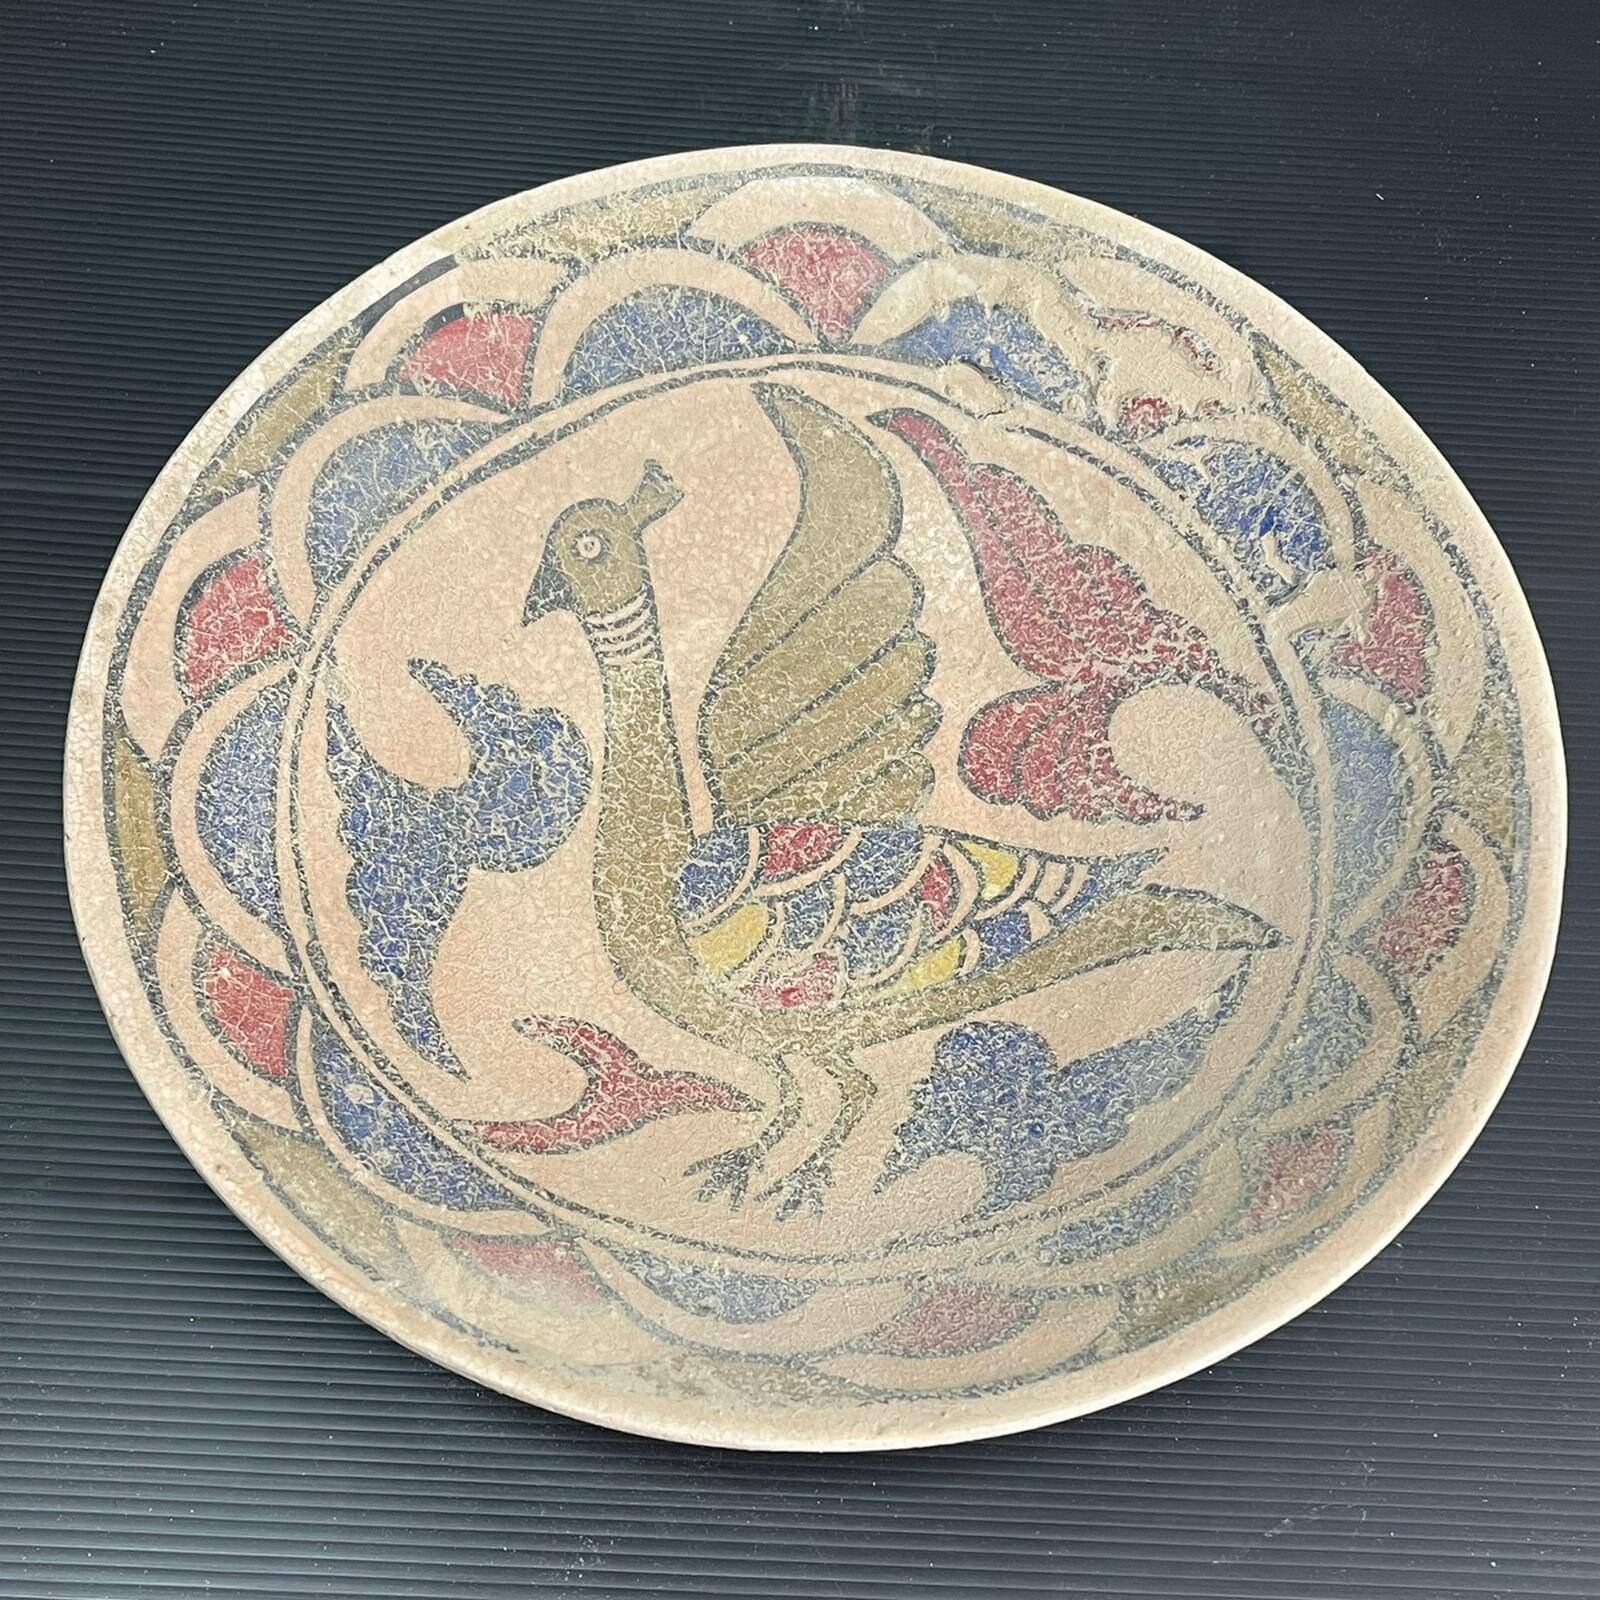 Wunderschöne Alte Khurasan Antike Keramik Schale Mit Ausgezeichnet Bemalter, Verzinkter Wundervoller/Kostenloser Versand Weltweit von CrystalballStore